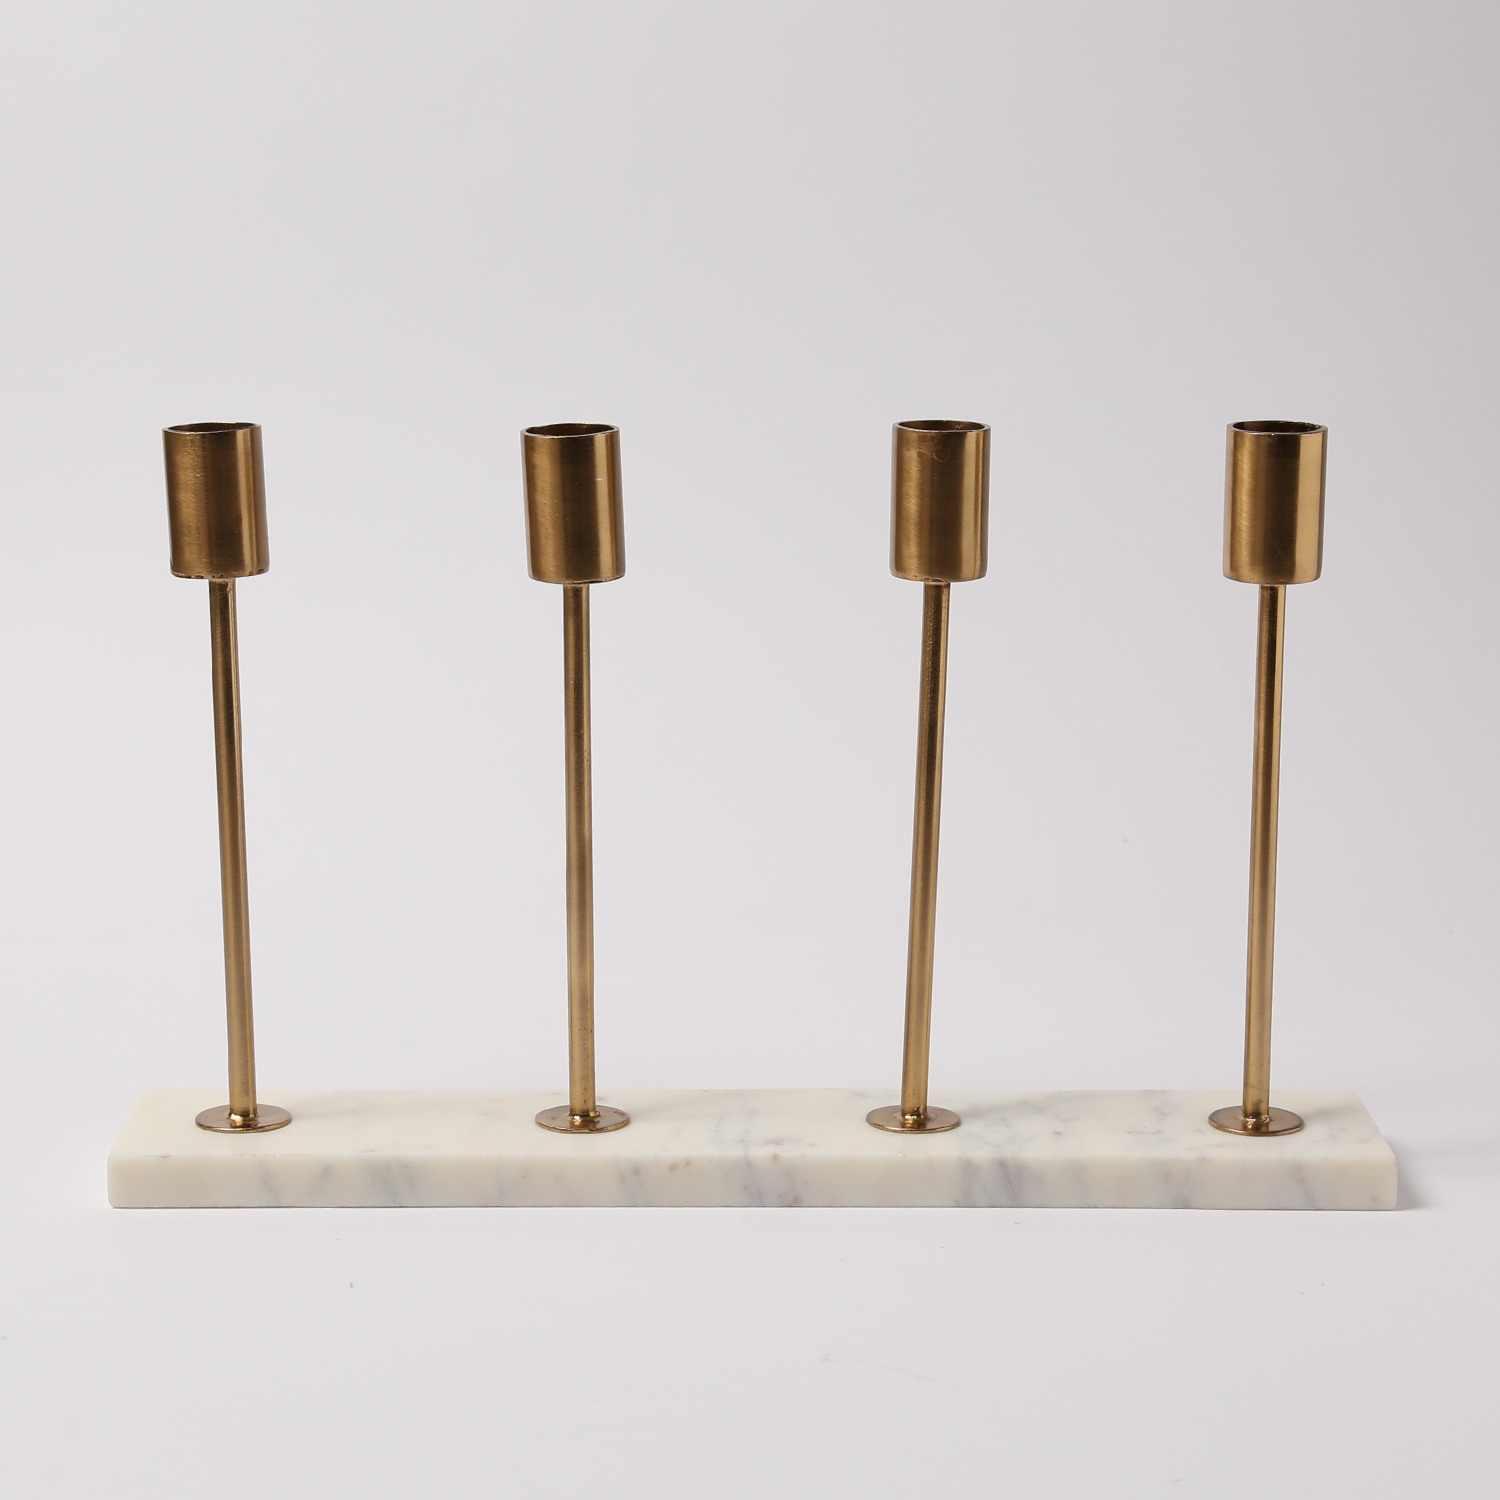 Stabkerzenhalter - Kerzenständer - Marmorplatte - 4 goldfarbene  Kerzenhalterungen - H: 20cm - weiß